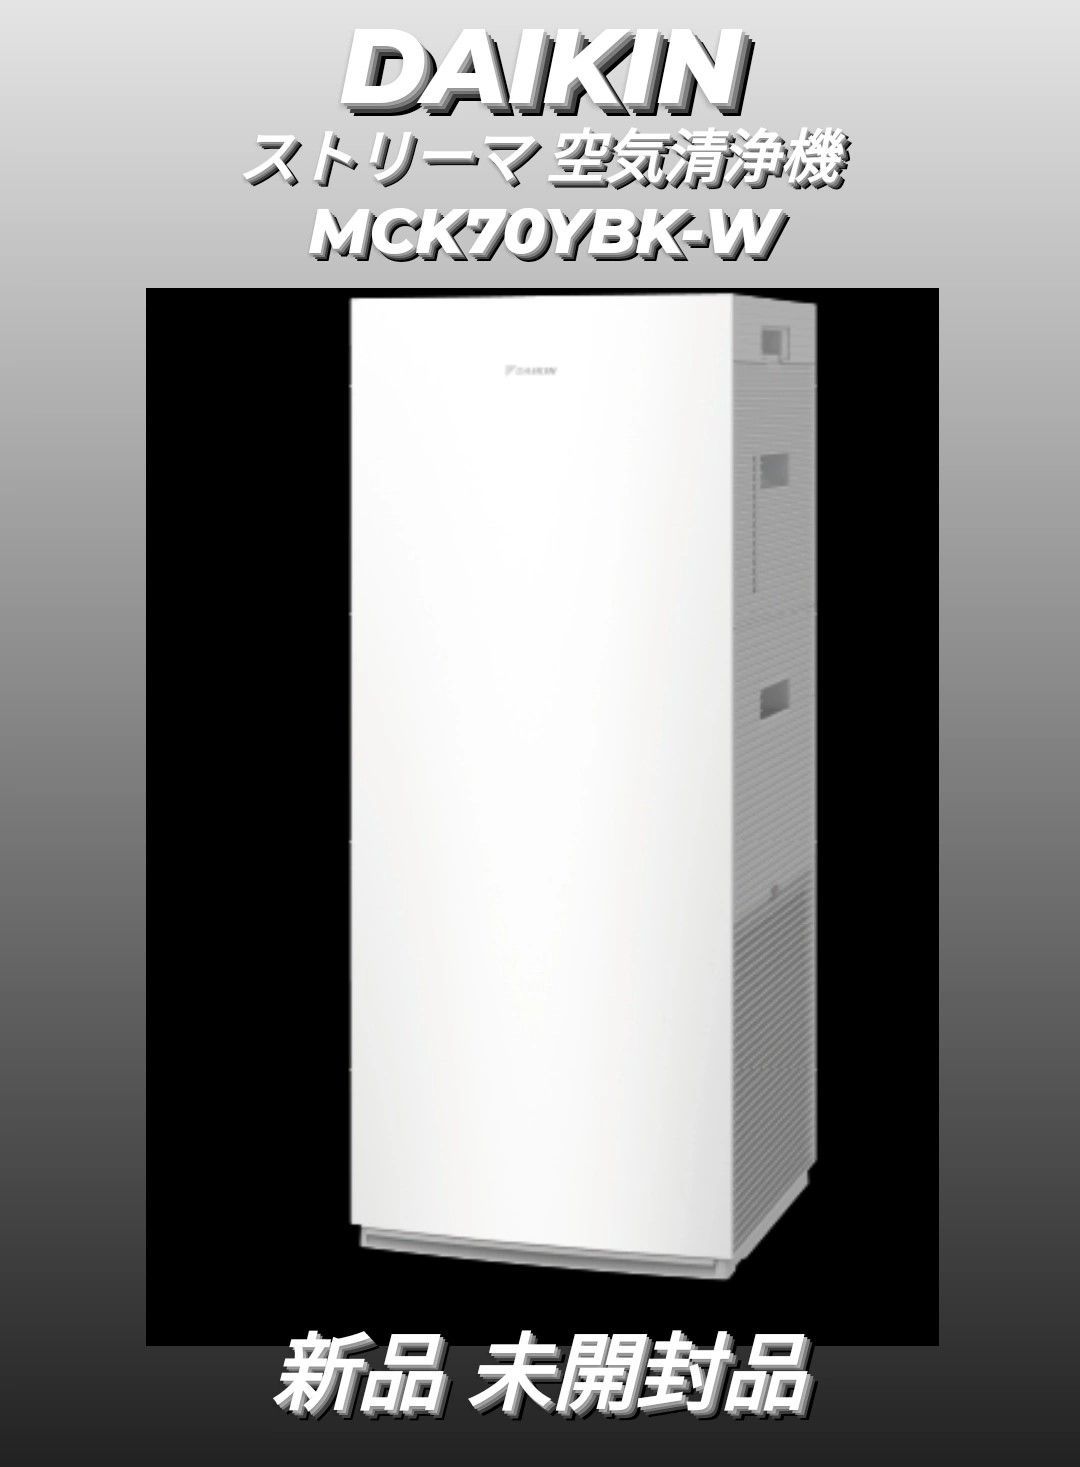 ダイキン ストリーマ 空気清浄機 ホワイト MCK70YBK-W 新品未開封品